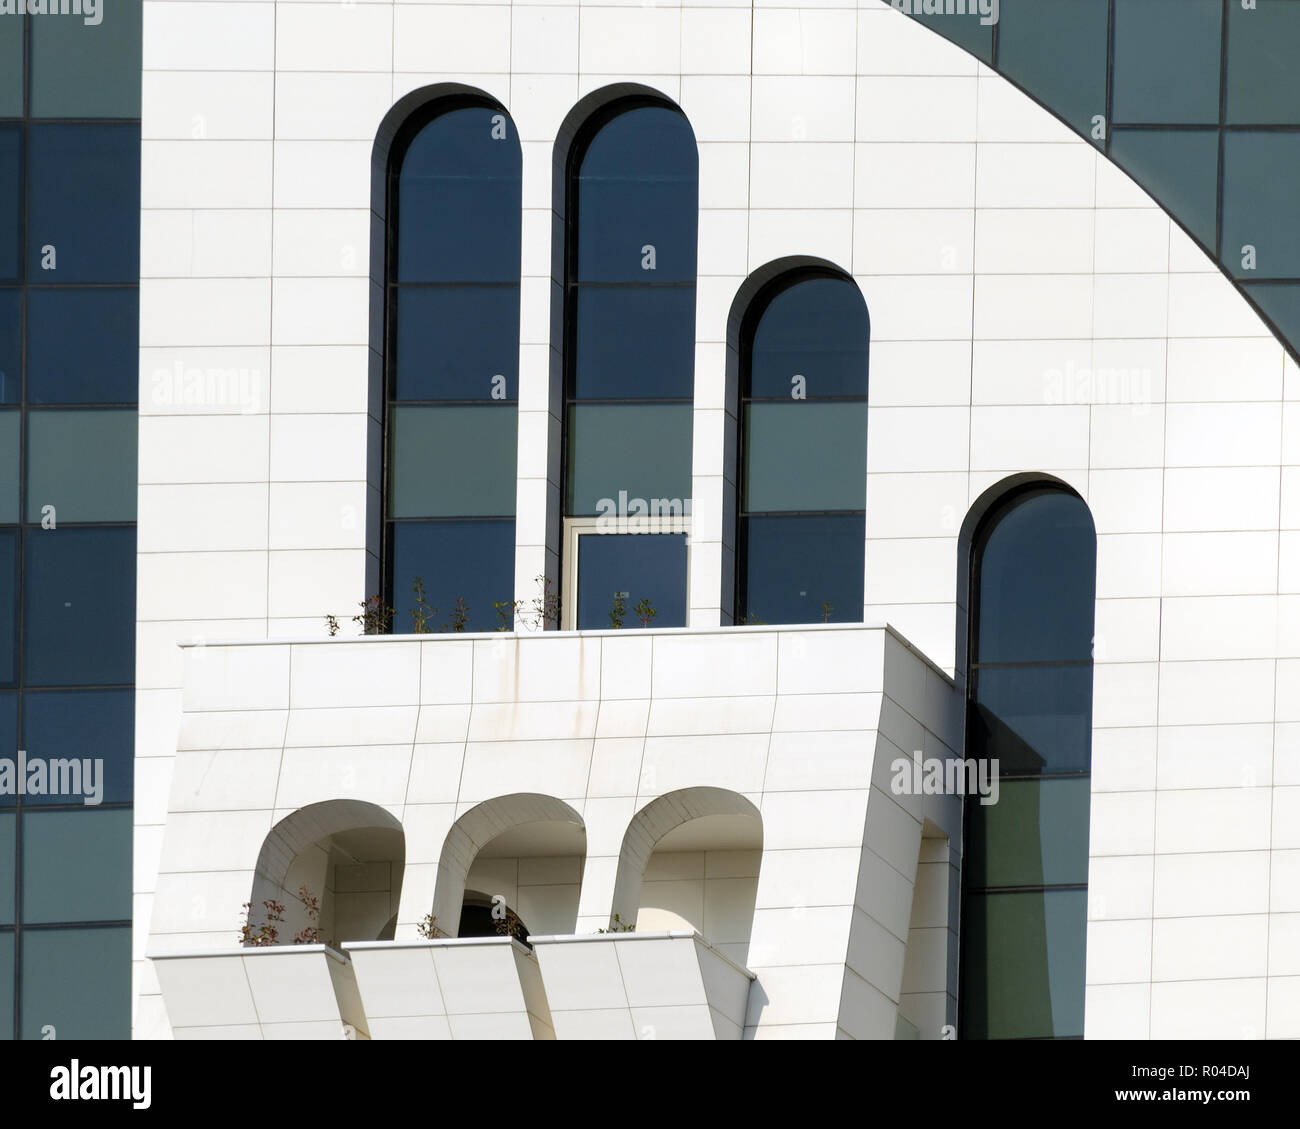 Particolare della facciata di edificio moderno - vista frontale in corrispondenza di finestre ad arco di diverse forme e dimensioni. Batumi, Georgia. Foto Stock